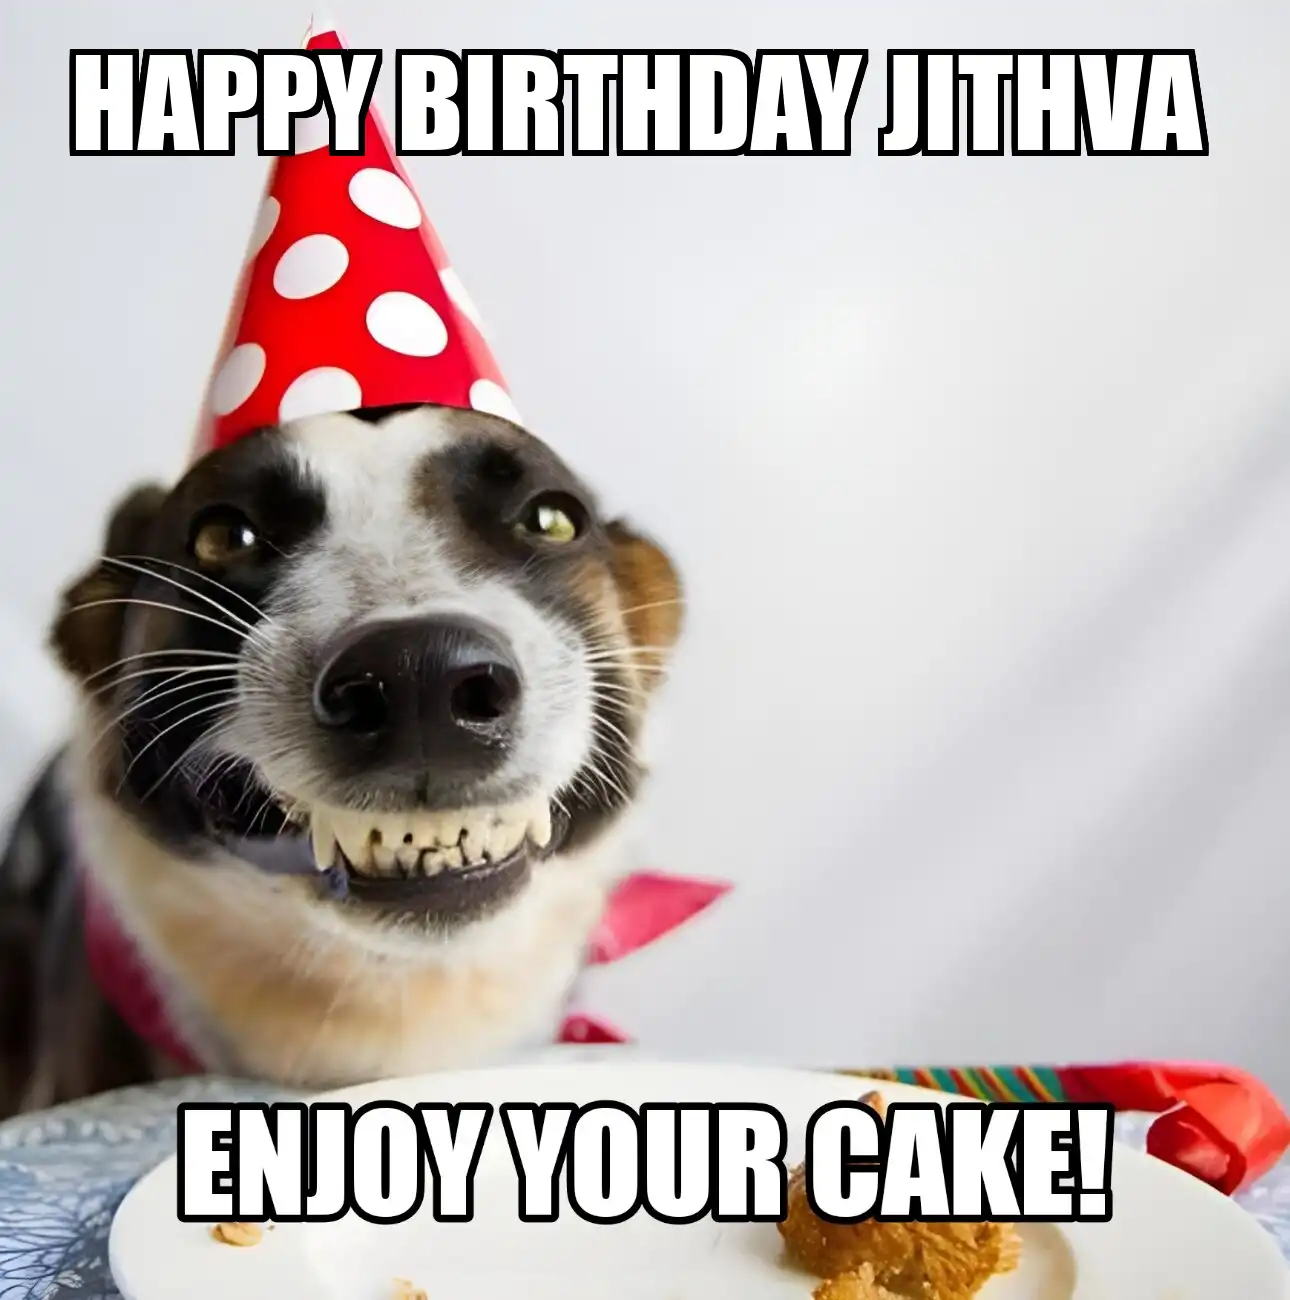 Happy Birthday Jithva Enjoy Your Cake Dog Meme